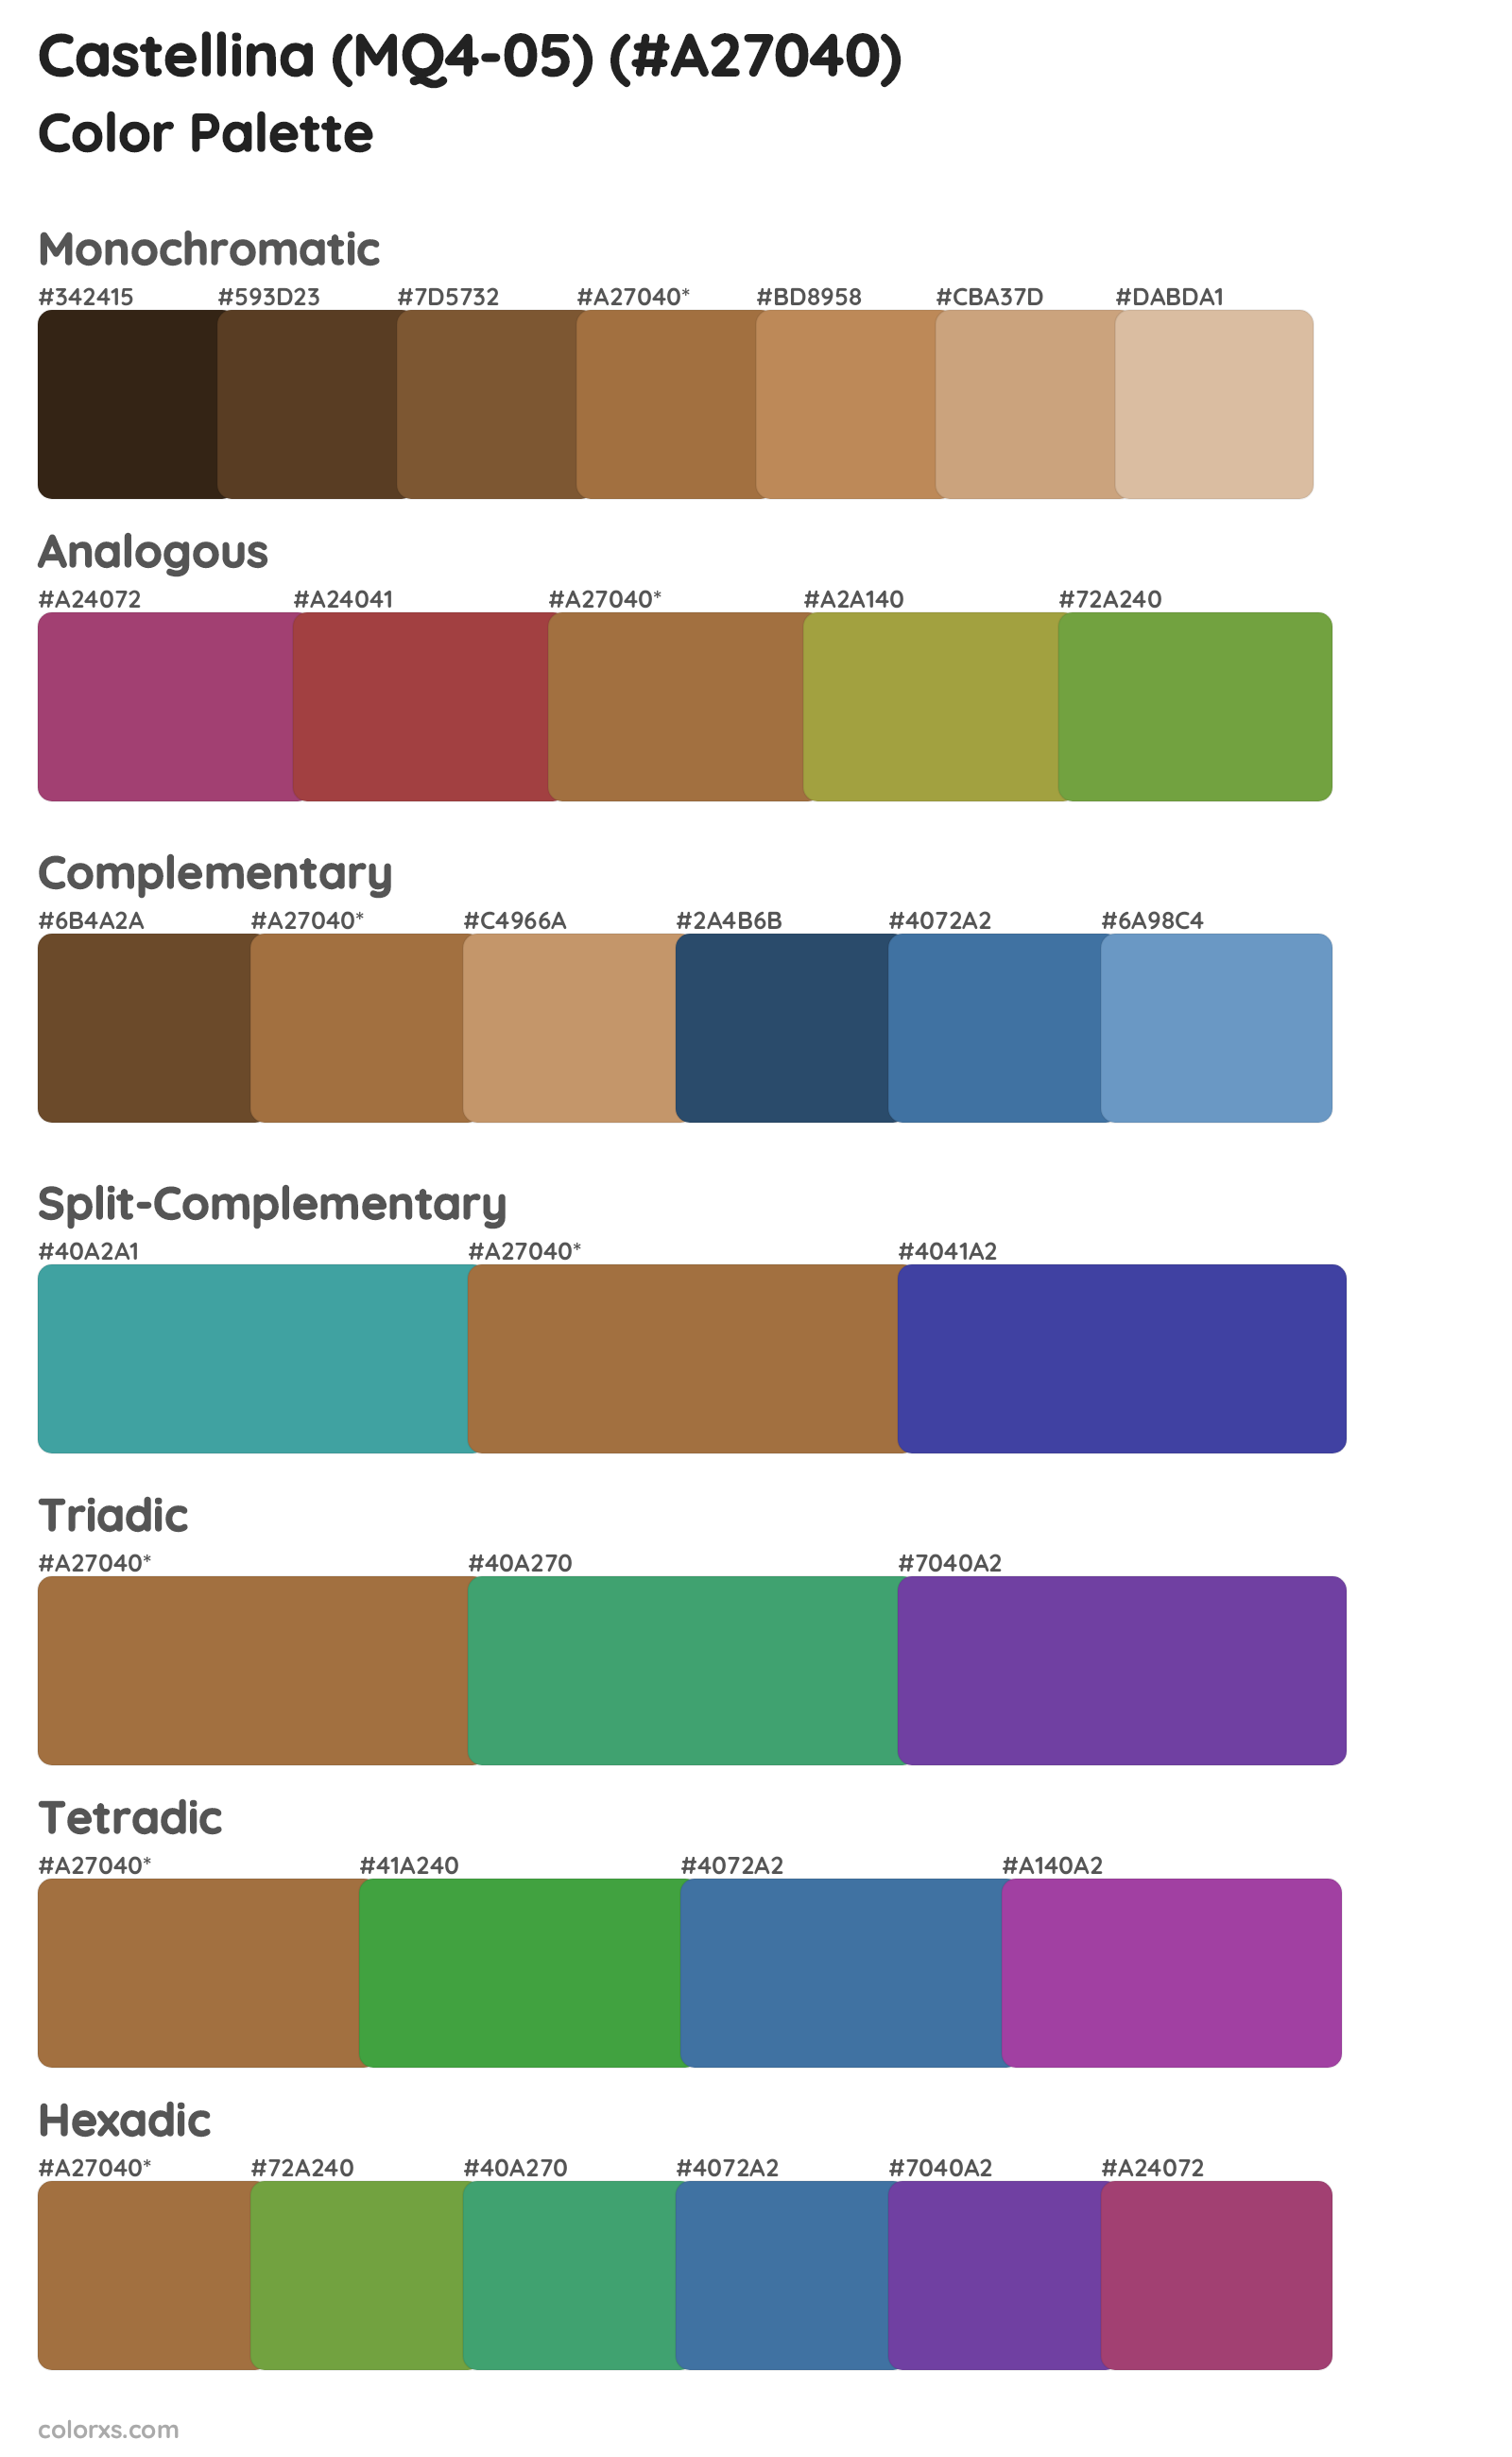 Castellina (MQ4-05) Color Scheme Palettes